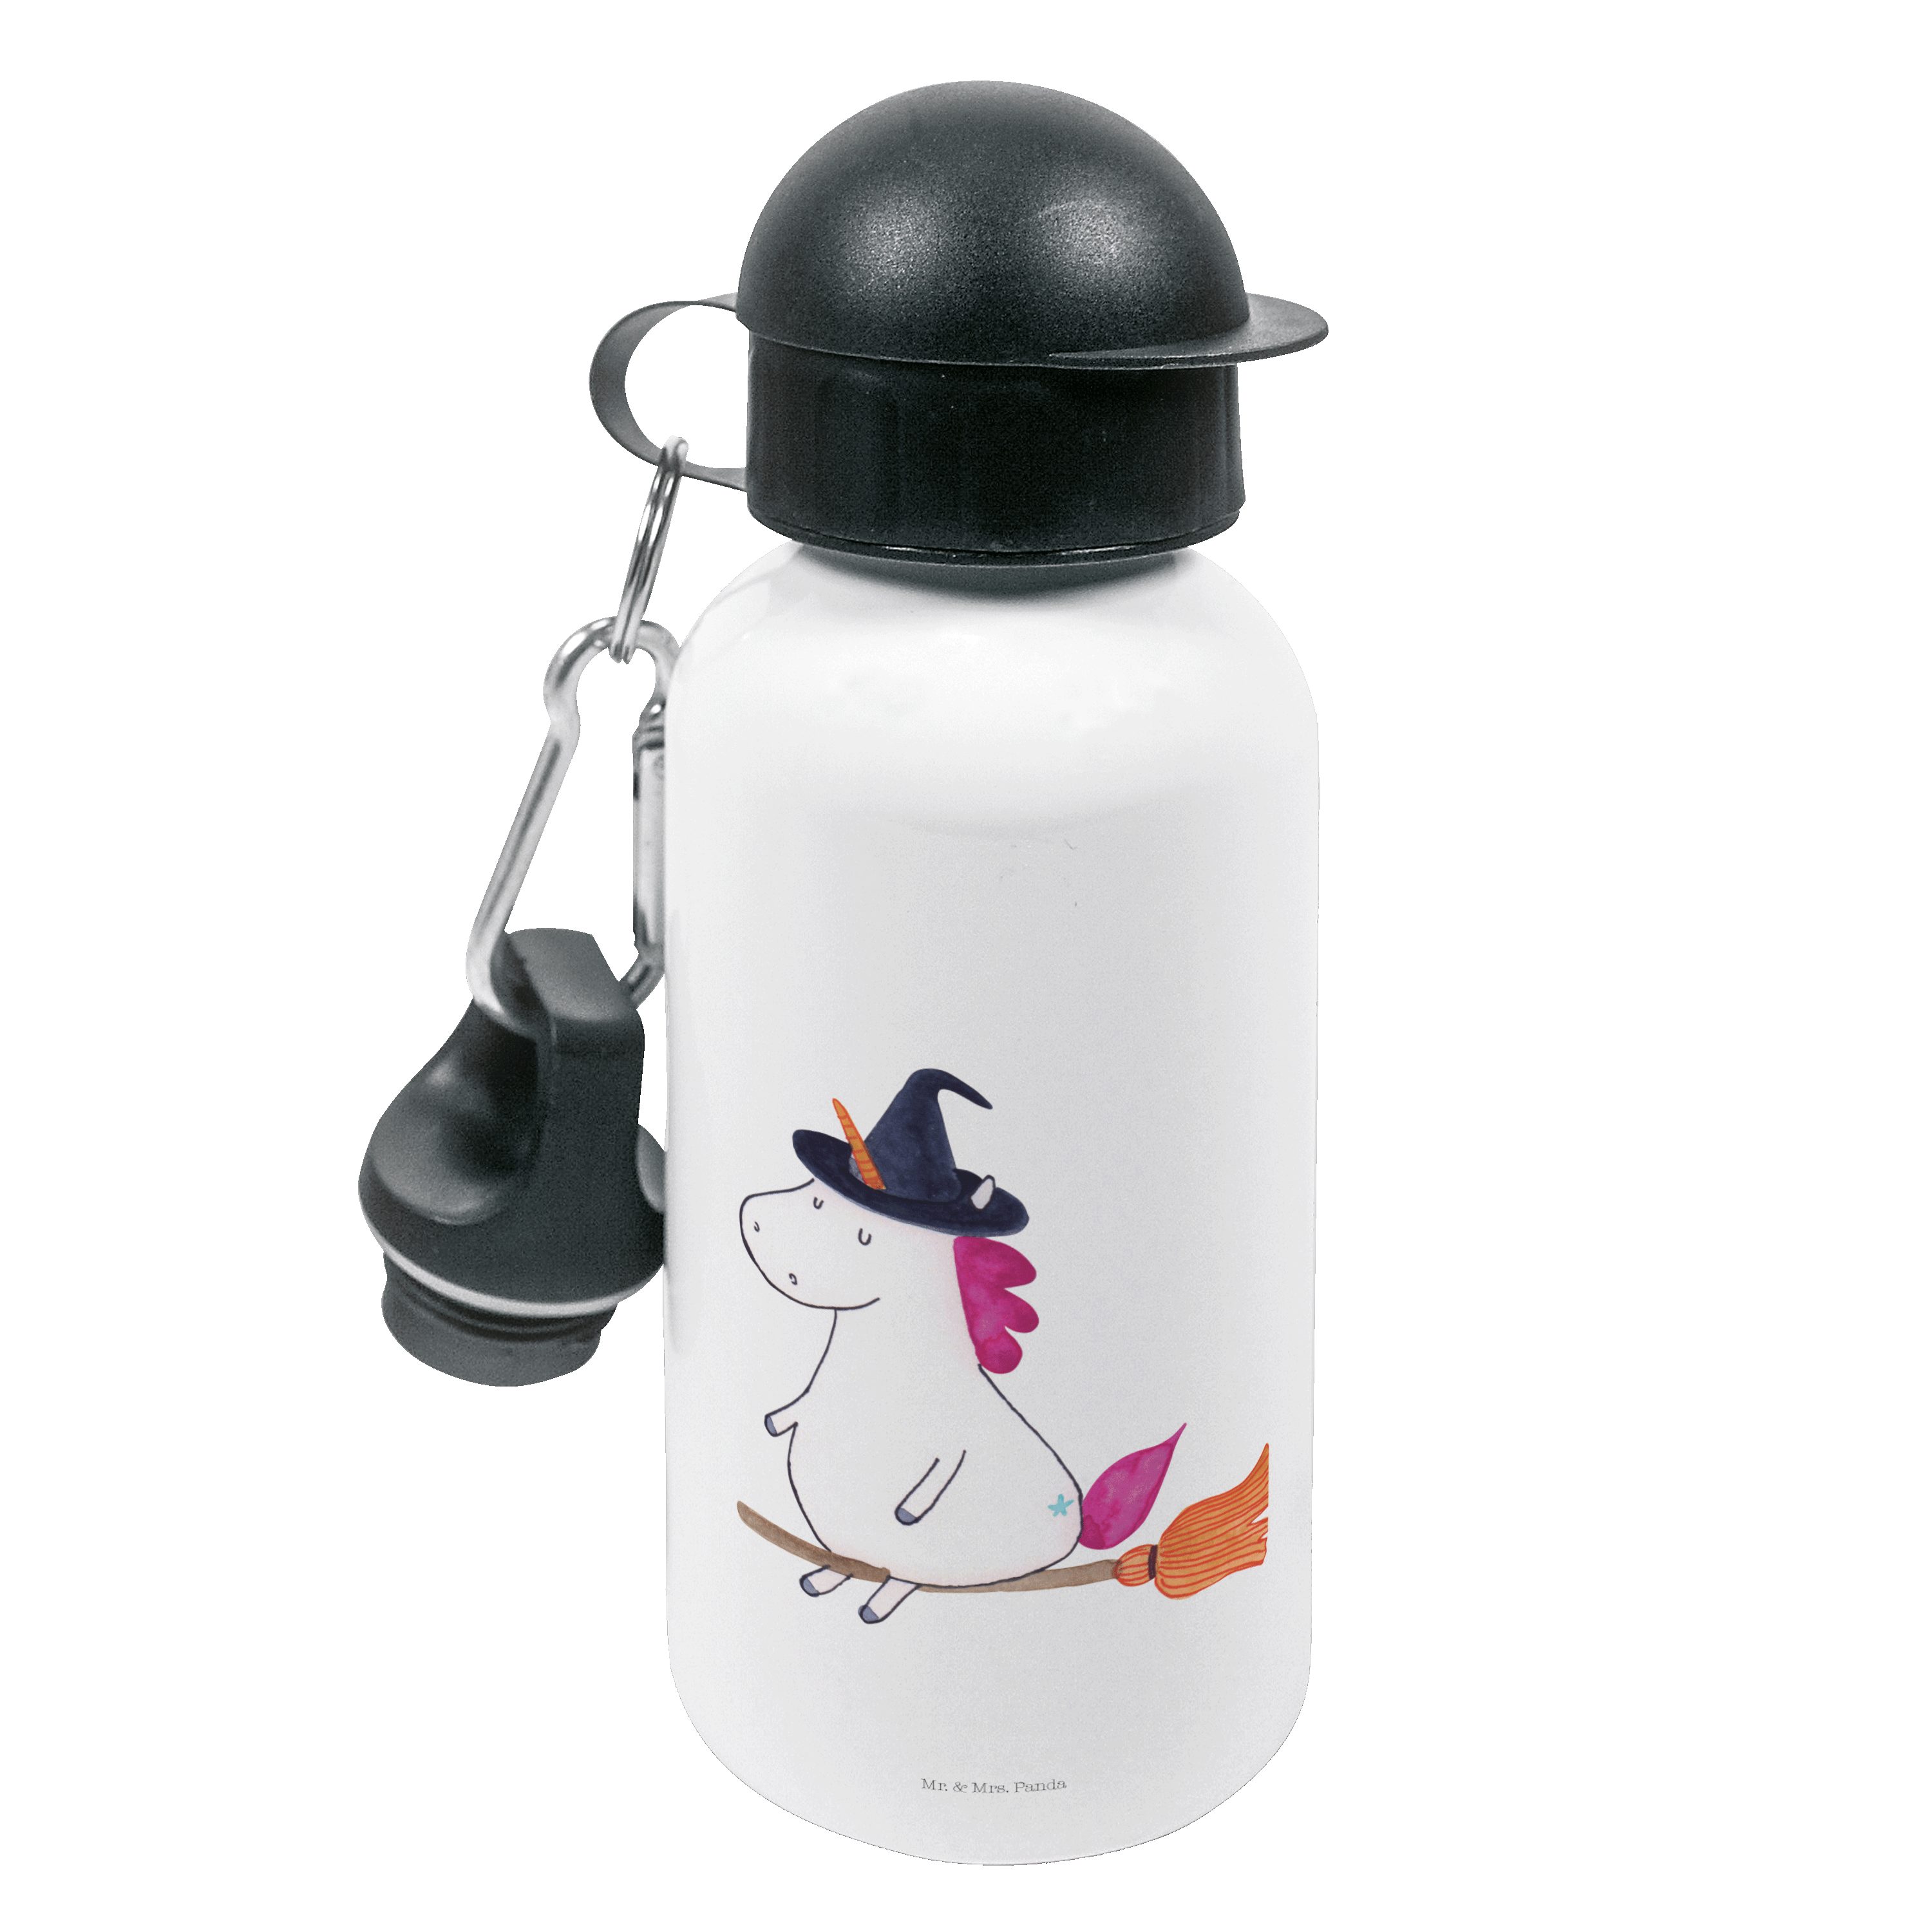 Mr. & Mrs. Panda Trinkflasche Einhorn Hexe - Weiß - Geschenk, Kindertrinkflasche, Unicorn, Ehefrau